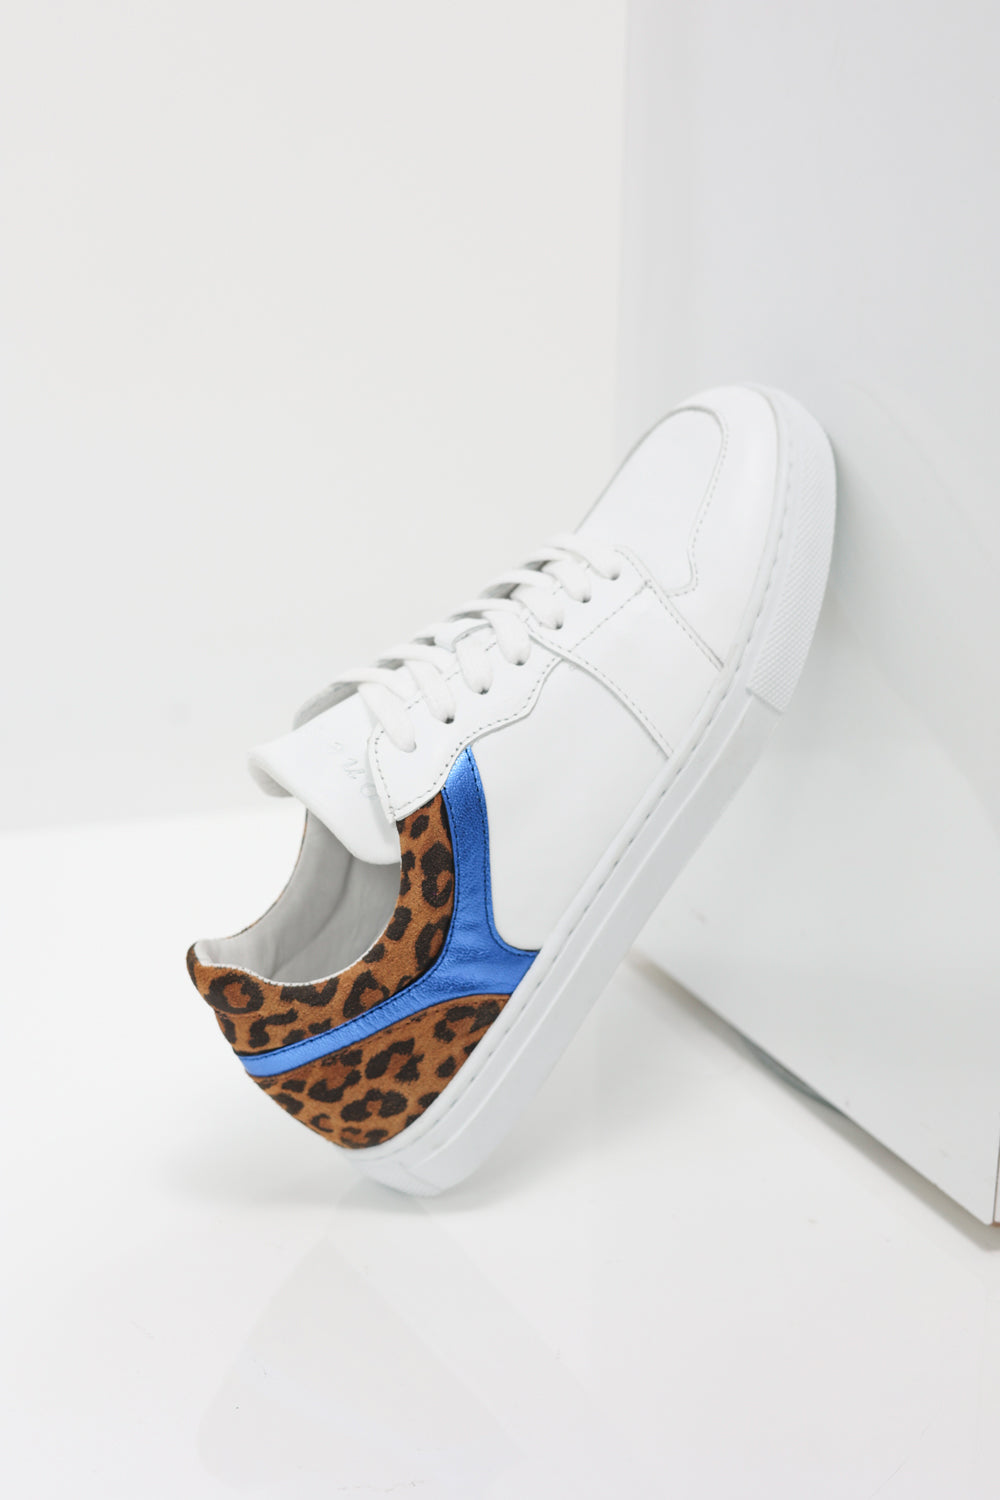 O.OLIVIA - Sneakers basses blanches en cuir avec découpes bleu métallisé et motif léopard